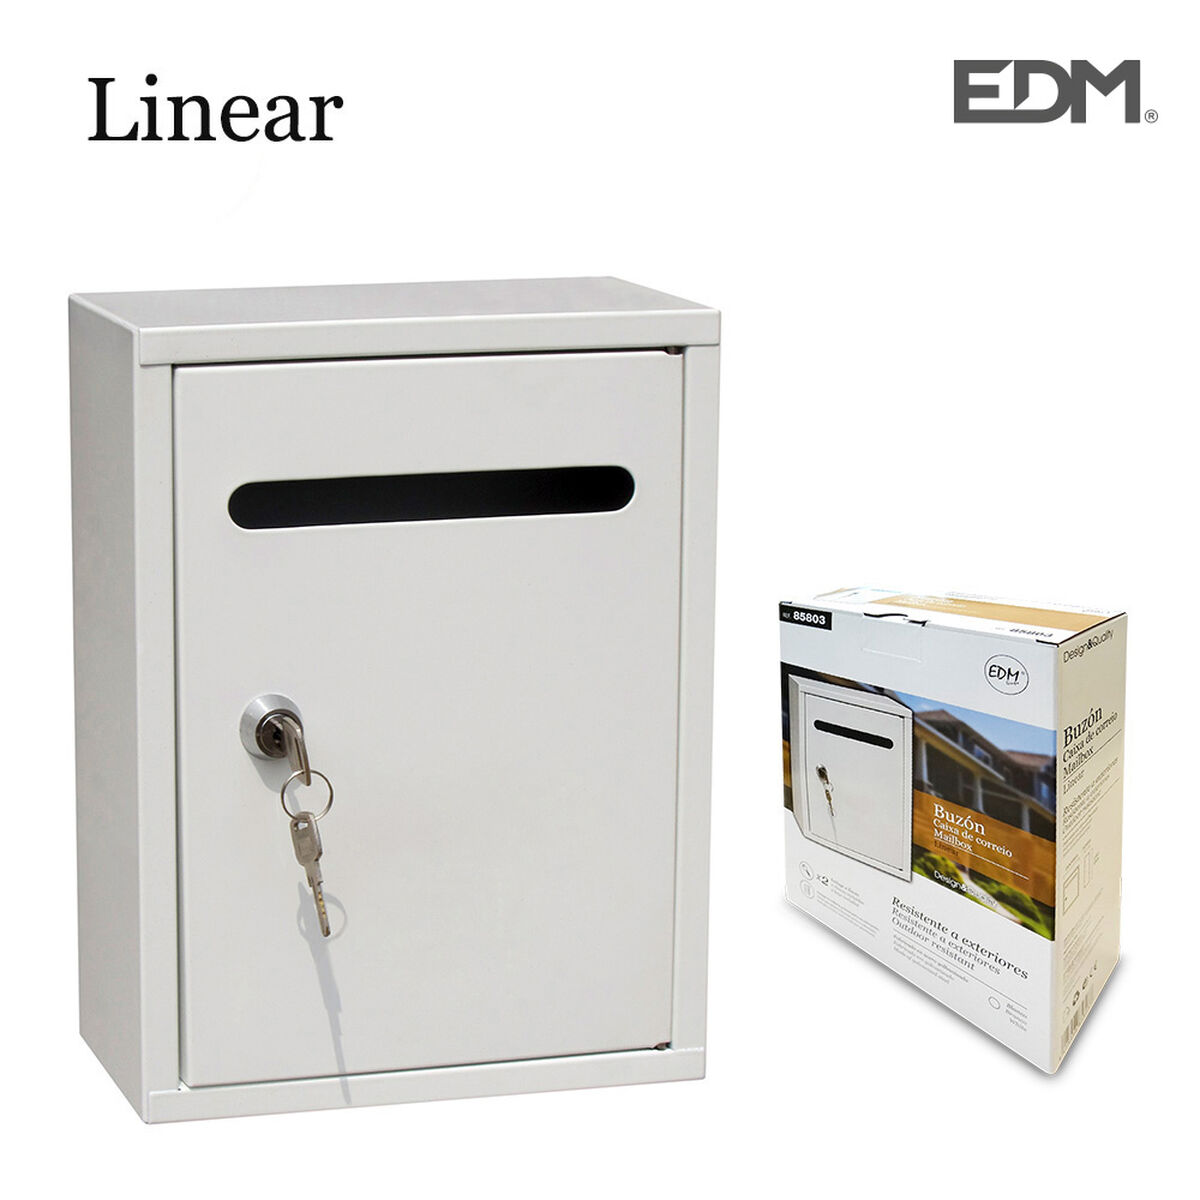 Cassetta della posta EDM Linear 26 x 20 x 7,5 cm Acciaio Bianco